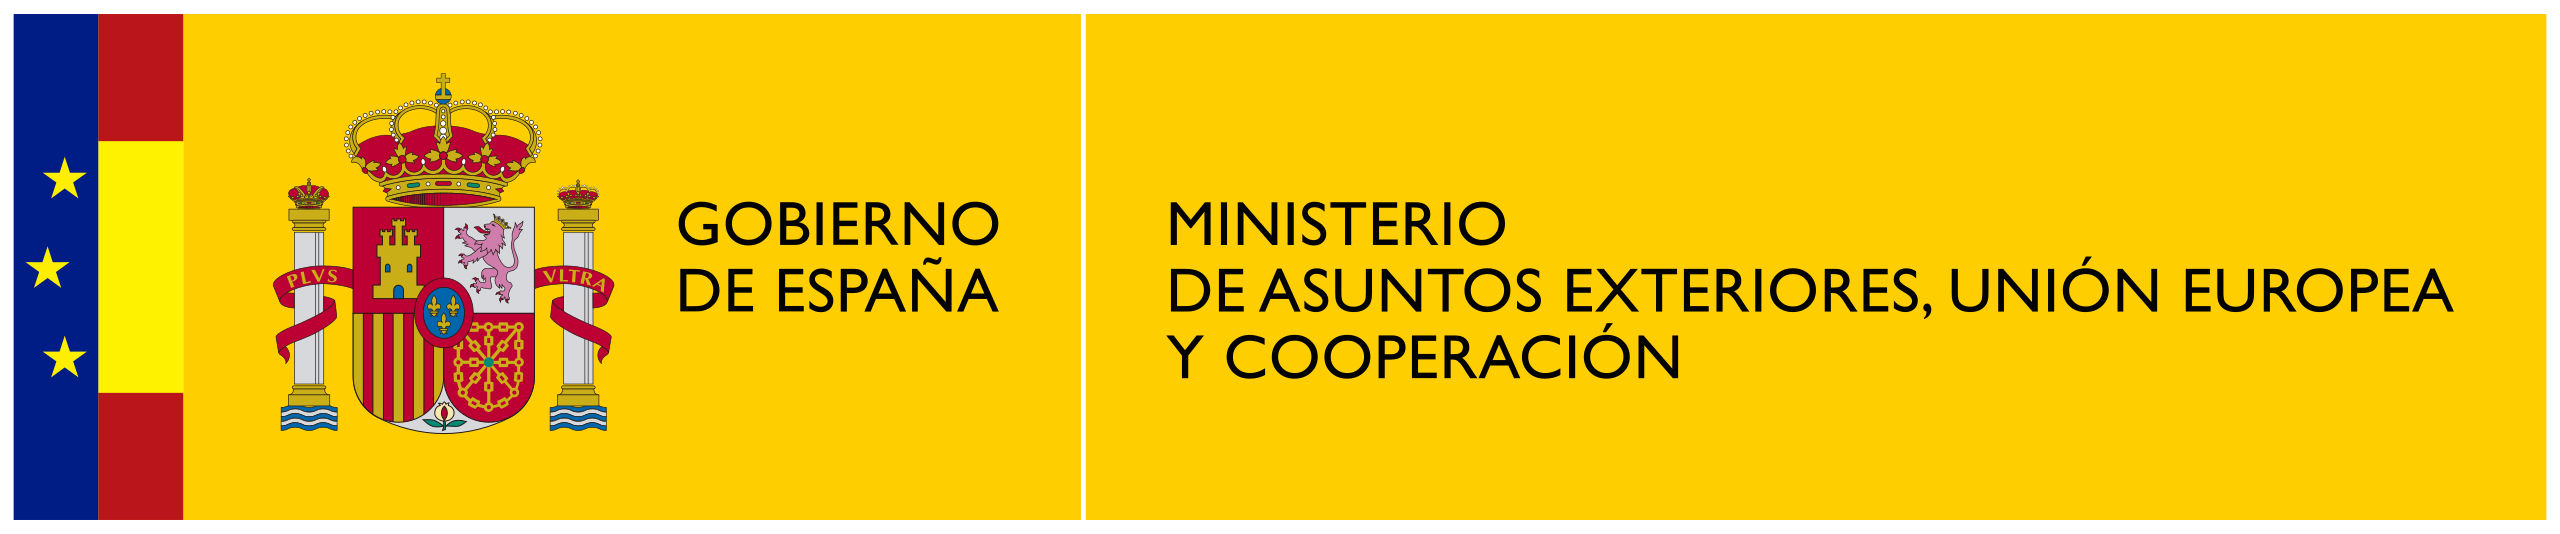 ministerio asuntos exteriores y cooperación